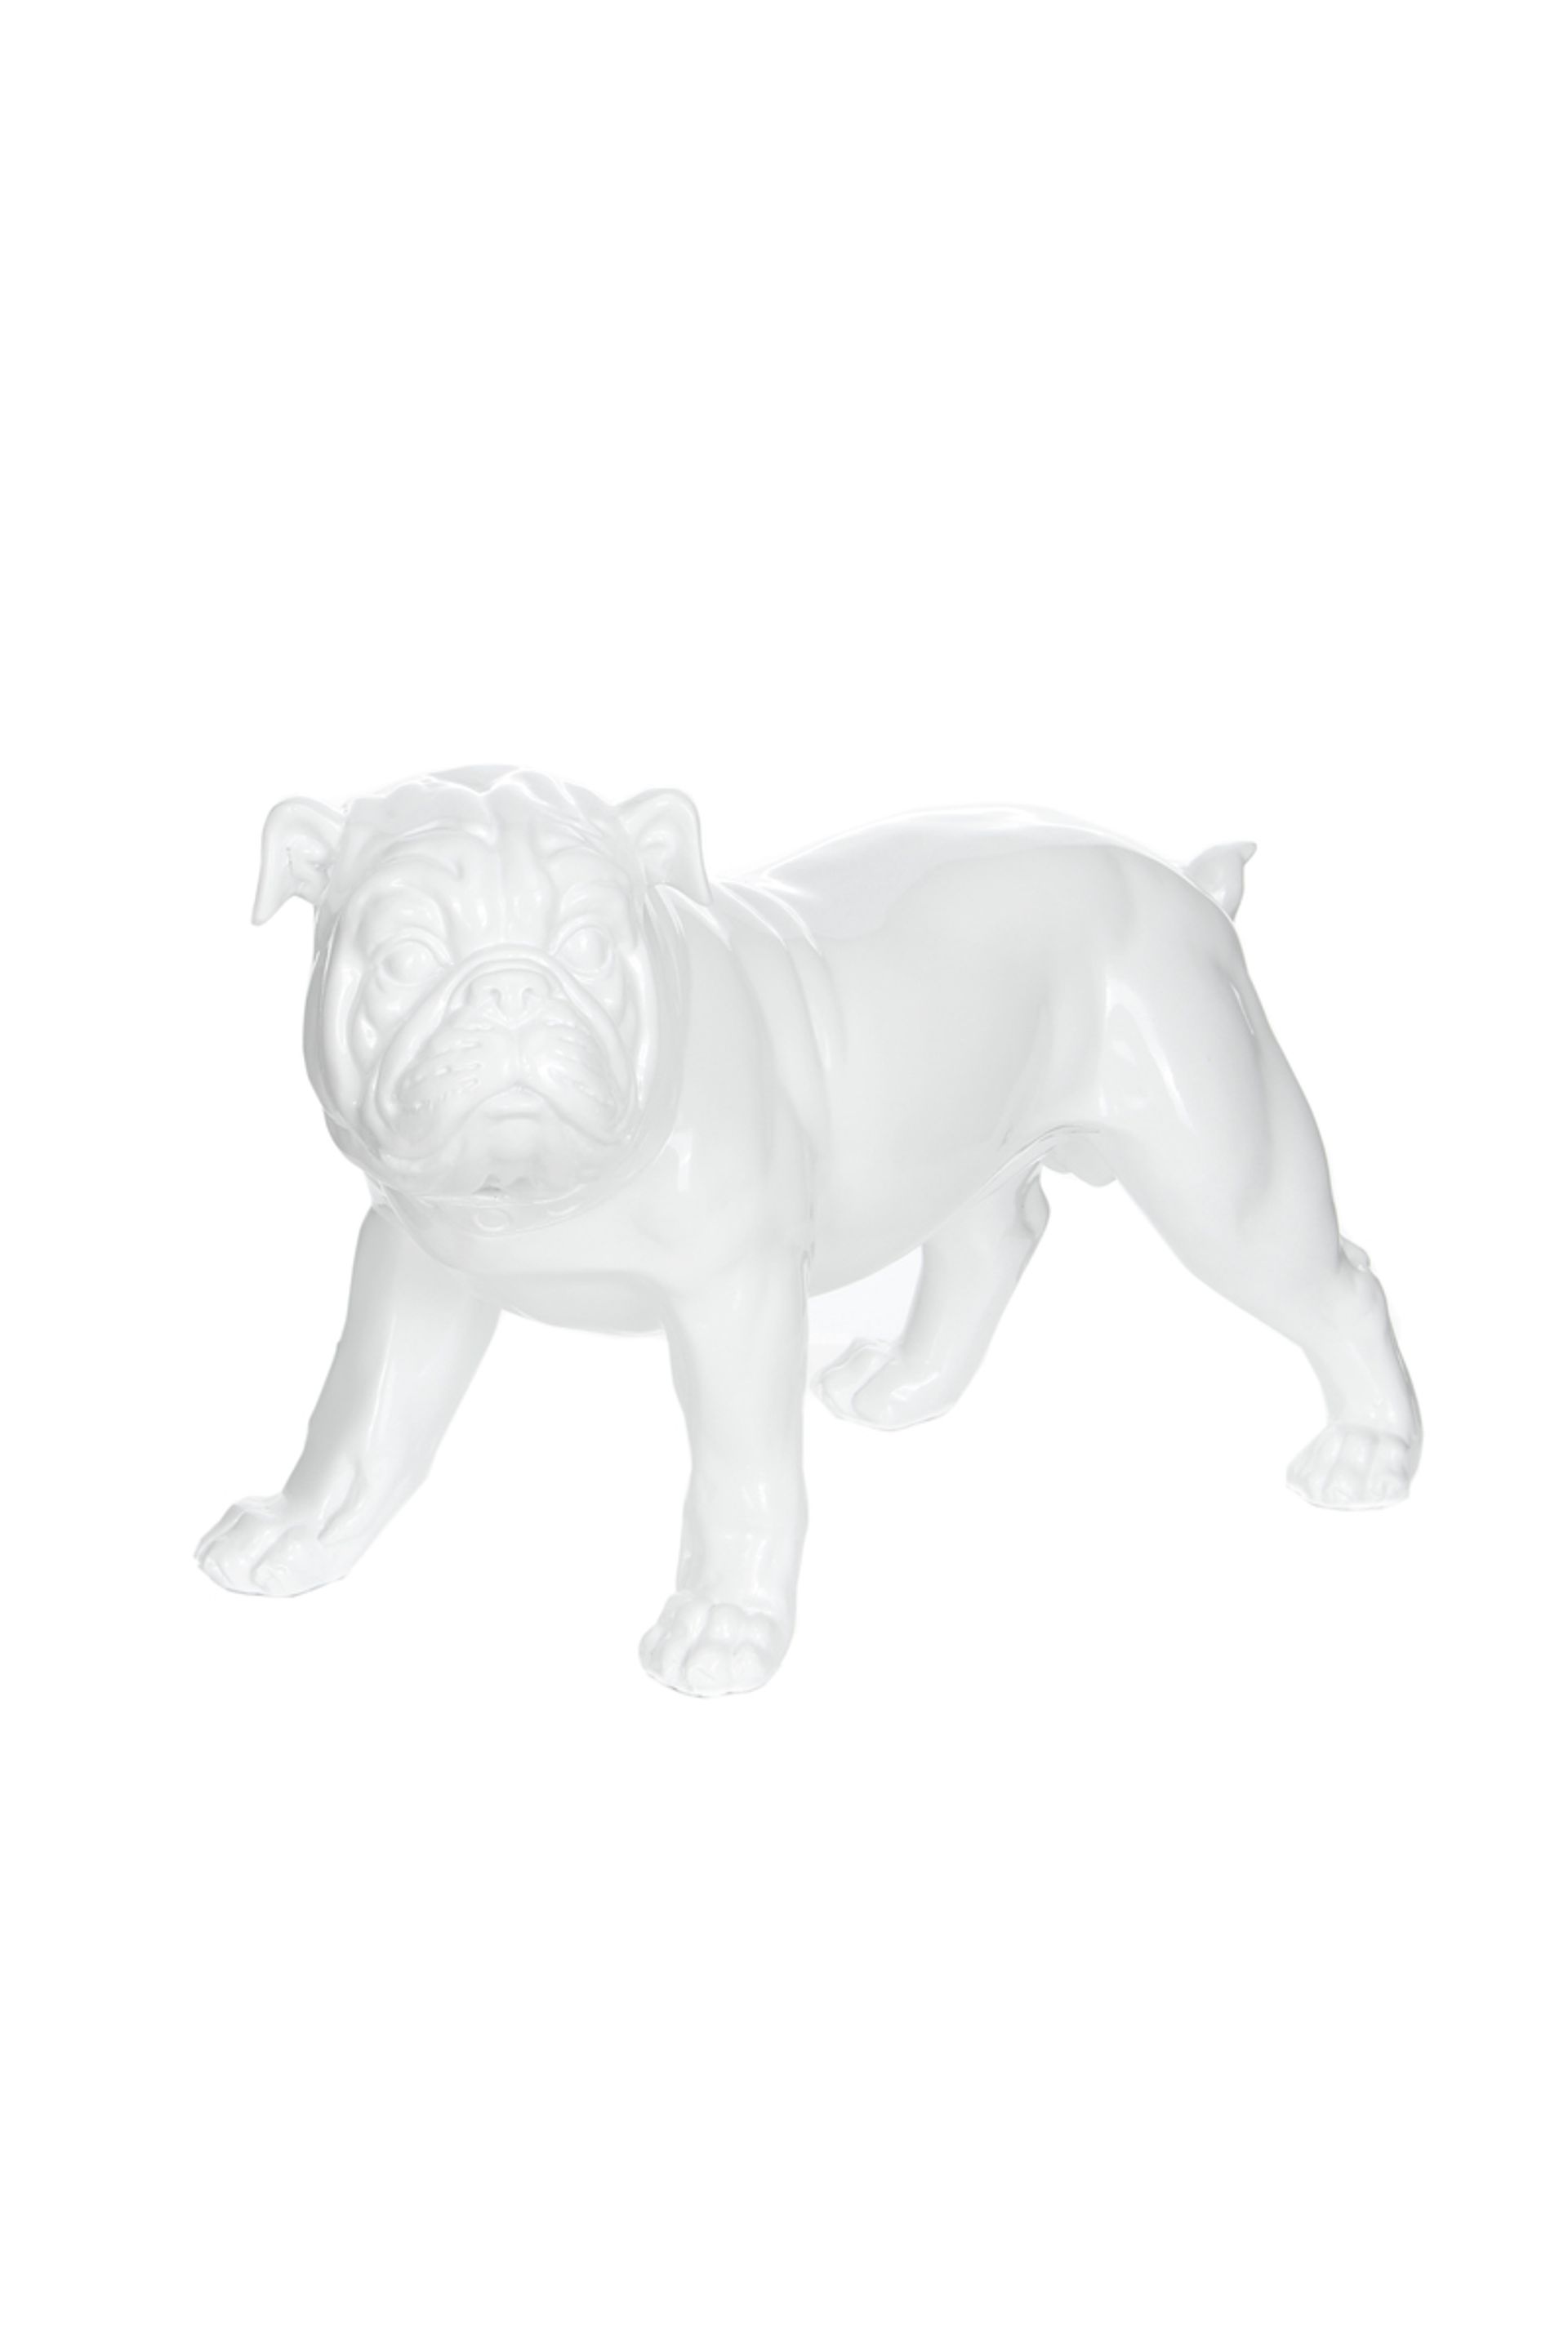 Skulptur Bulldog 21-J Weiß - 40 cm (L) x 20 cm (B) x 26 cm (H)